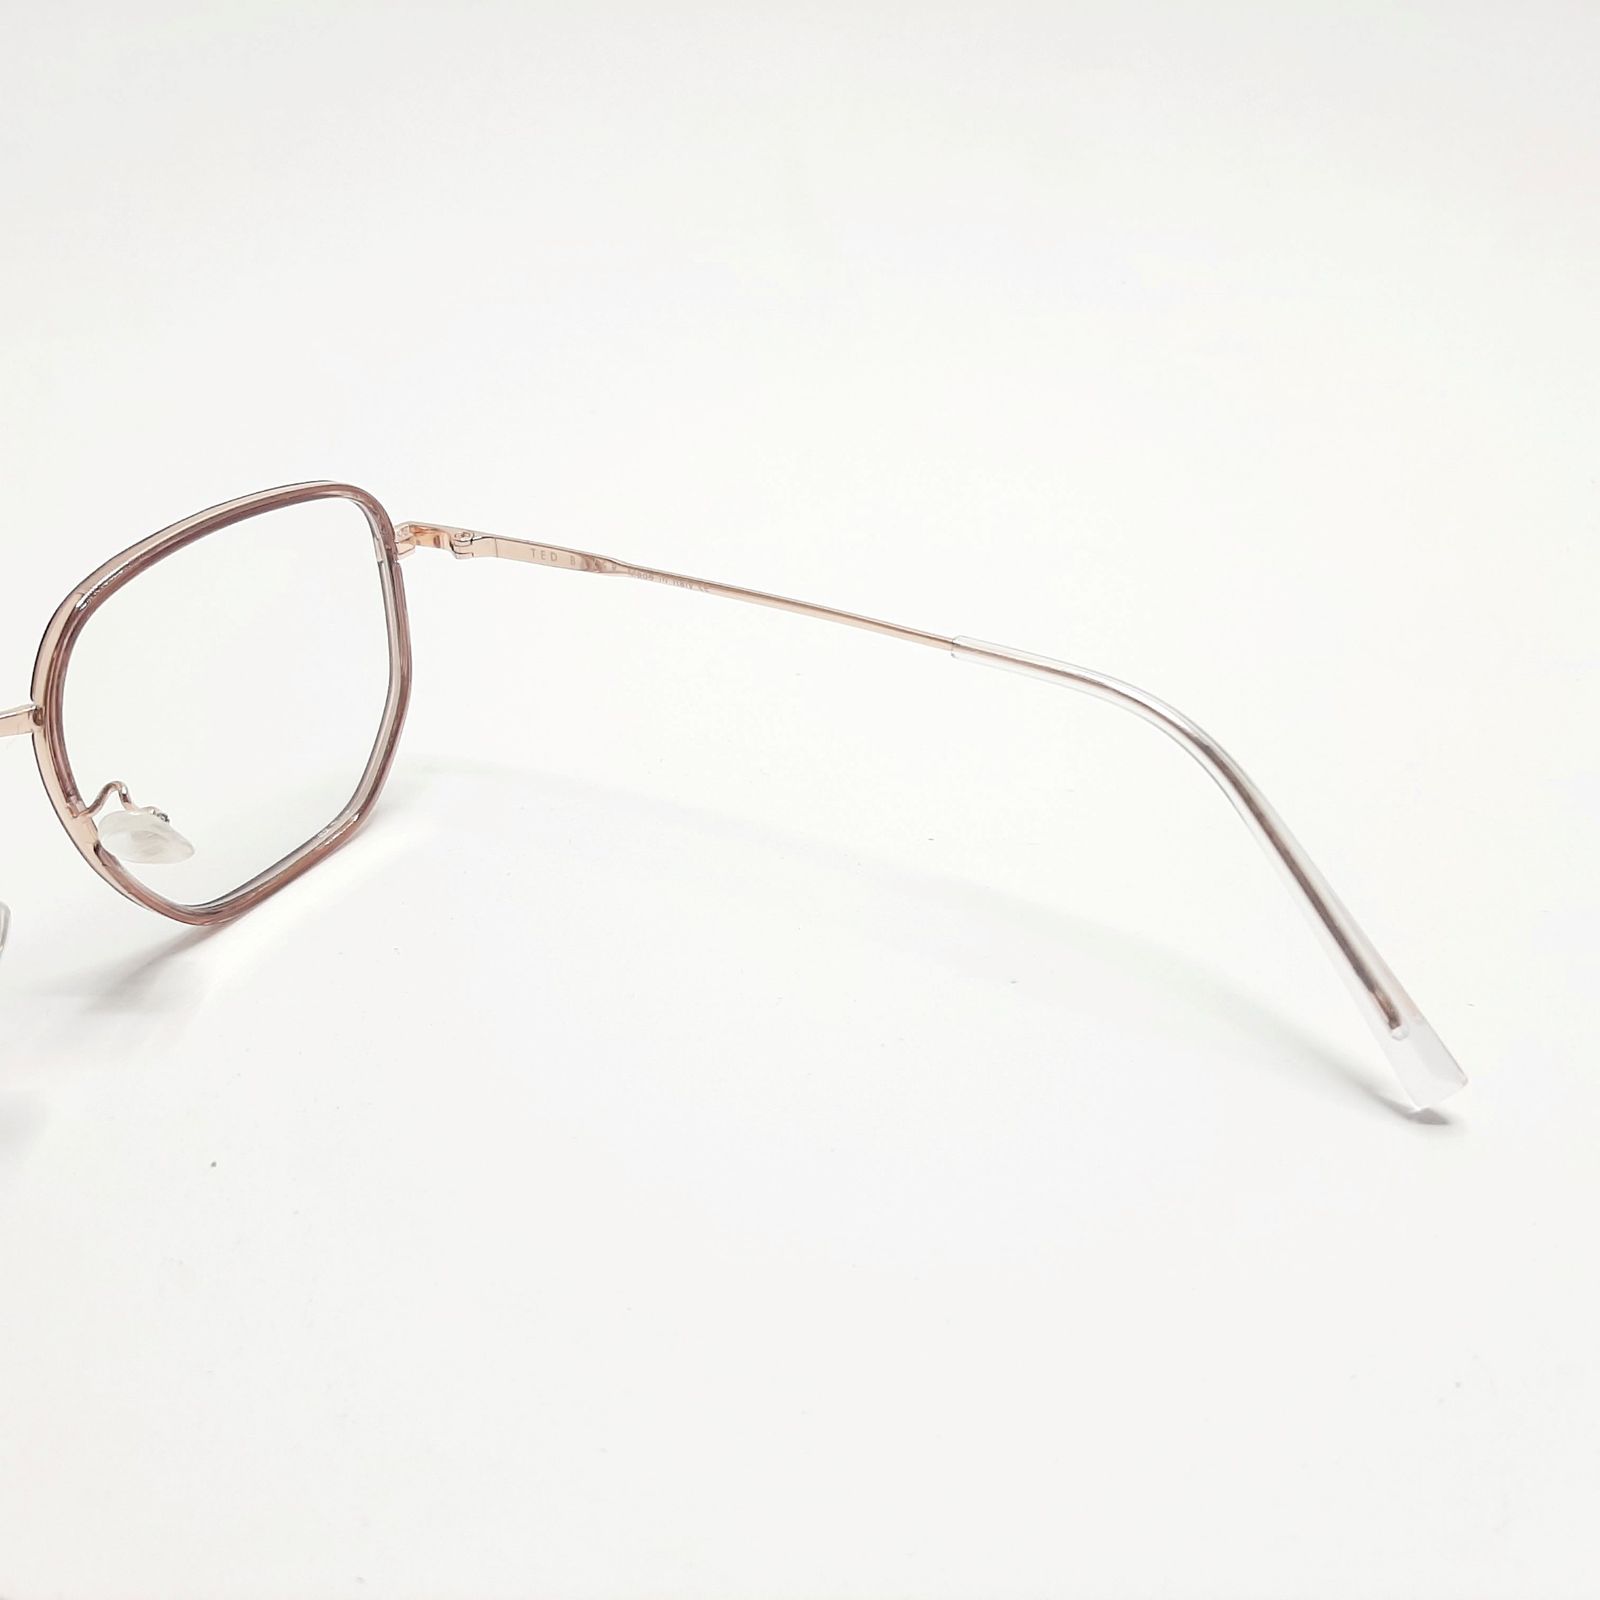 فریم عینک طبی تد بیکر مدل TB55082c3 -  - 7